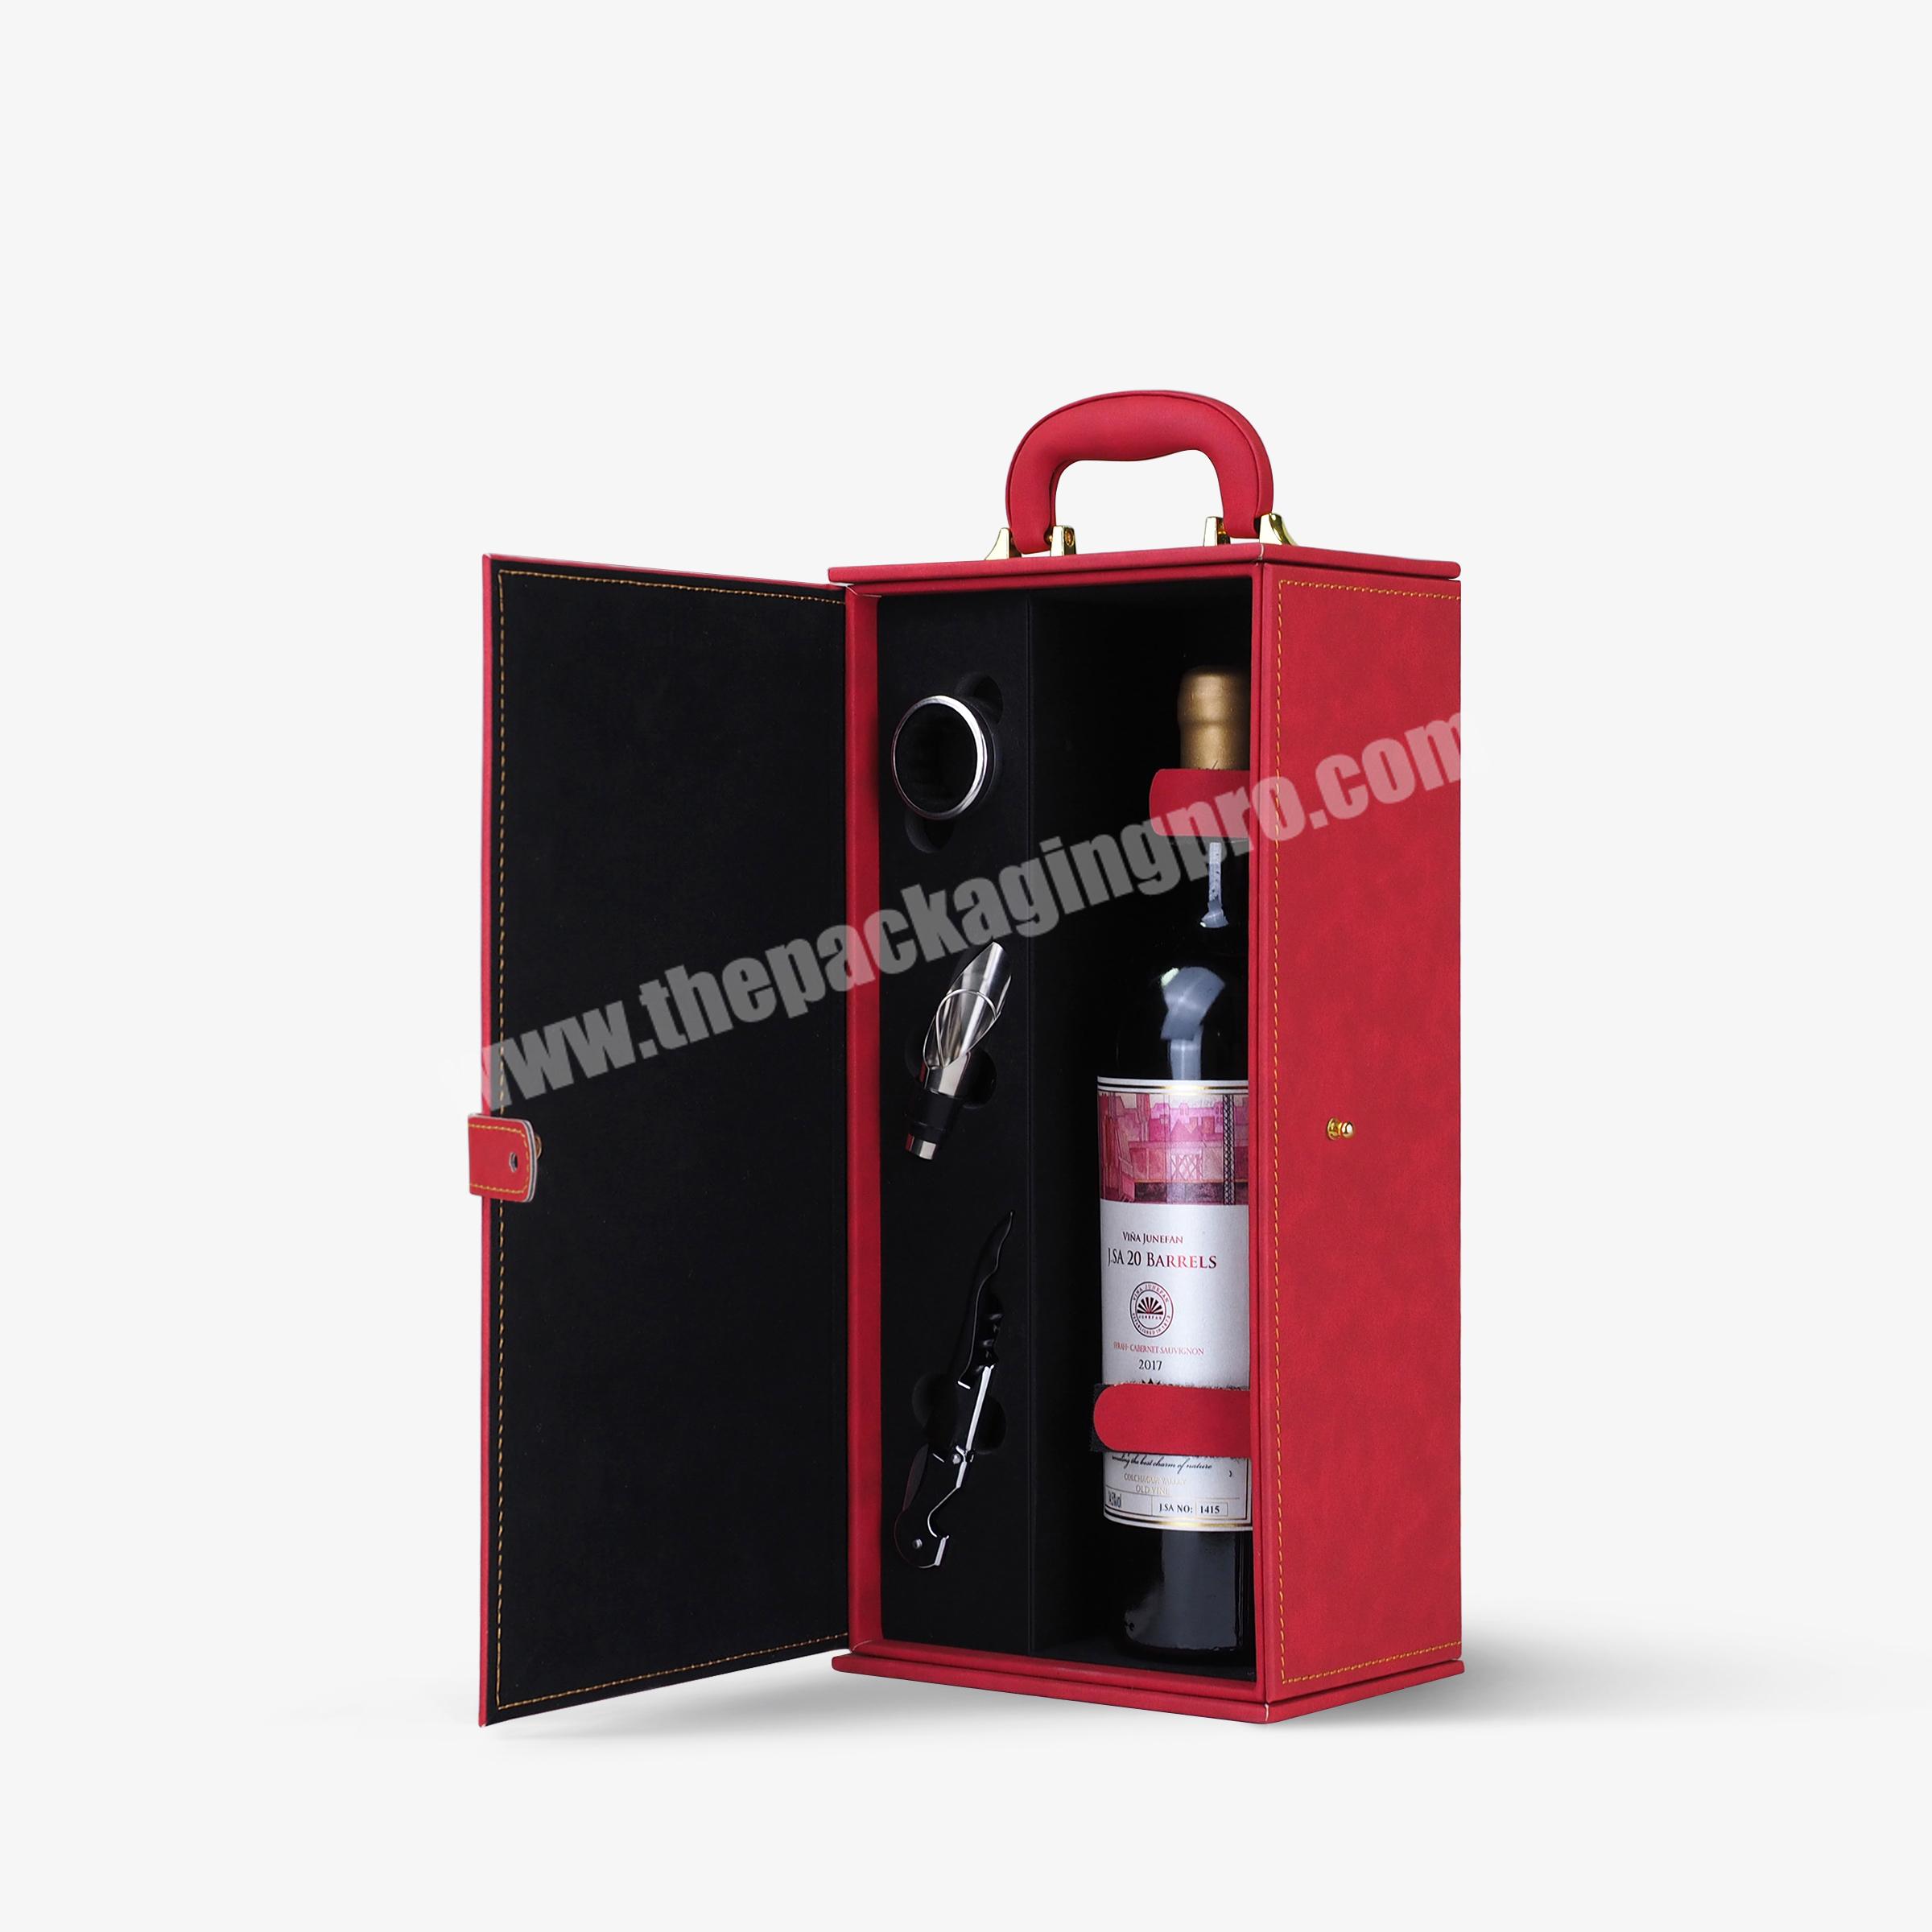 OEM custom single wine bottle box wine gift boxes wholesale portable wine box